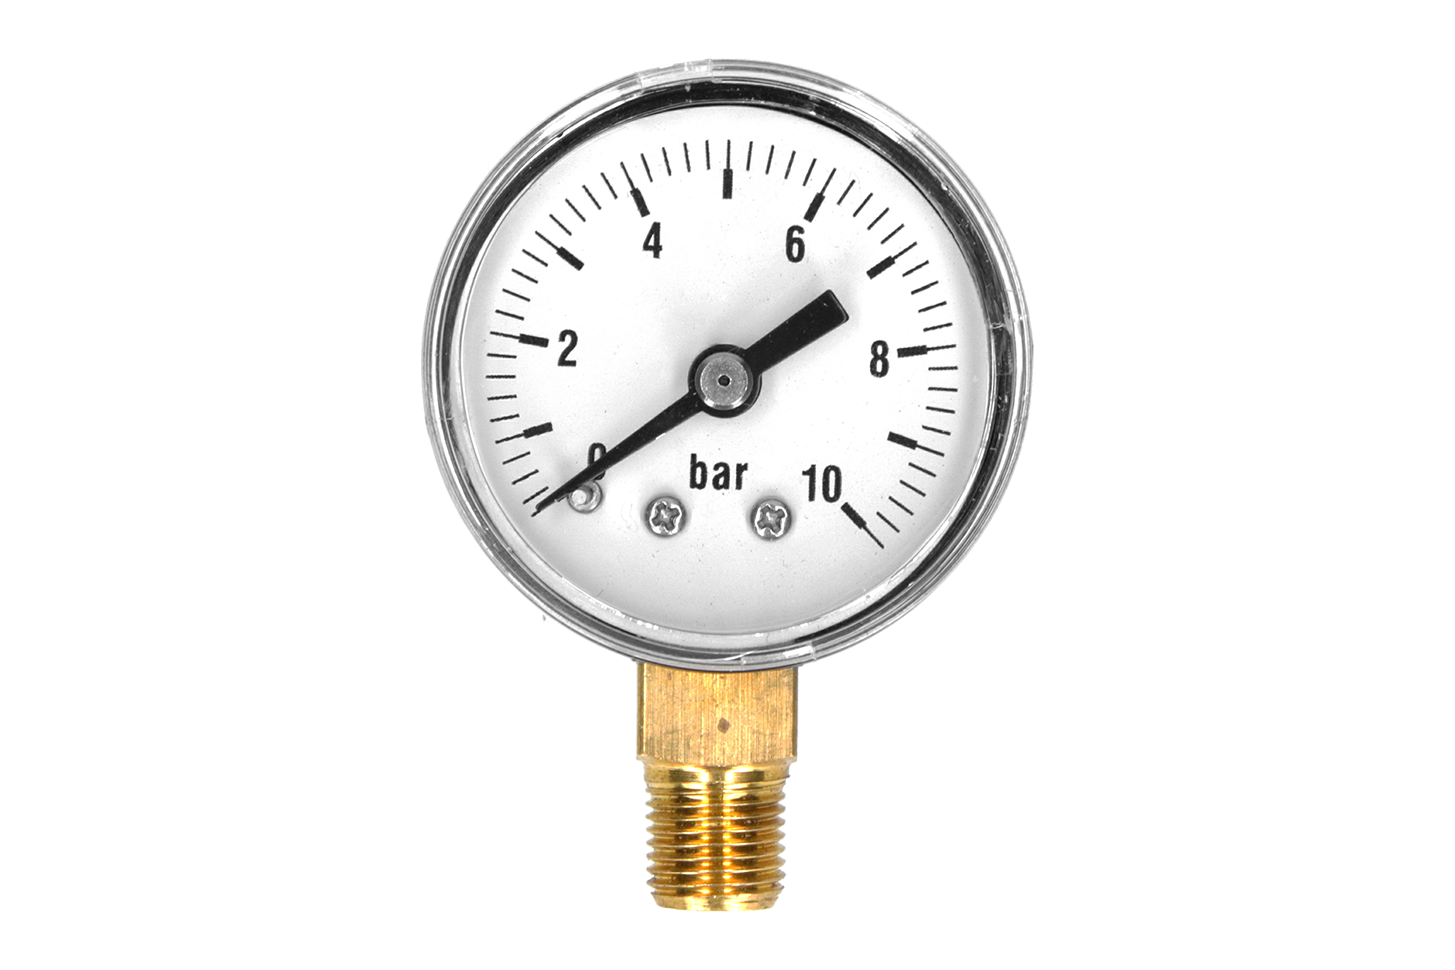 Pressure gauges in pneumatics